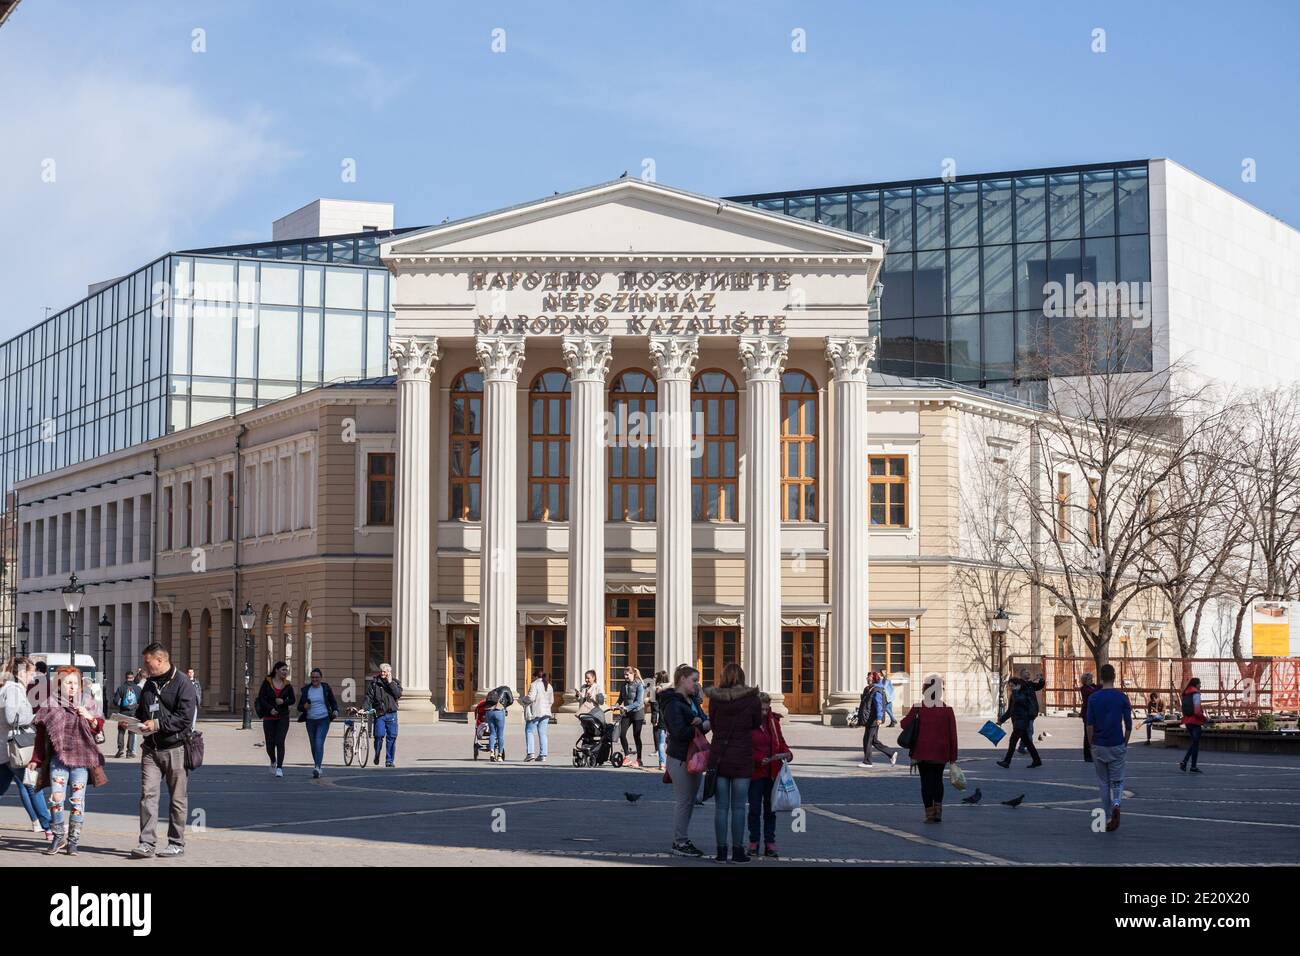 SUBOTICA, SERBIEN - 29. MÄRZ 2019: Fassade des Nationaltheaters von Subotica, mit Erwähnung des Nationaltheaters in Serbisch, Kroatisch und Ungarisch. Auch genannt Stockfoto